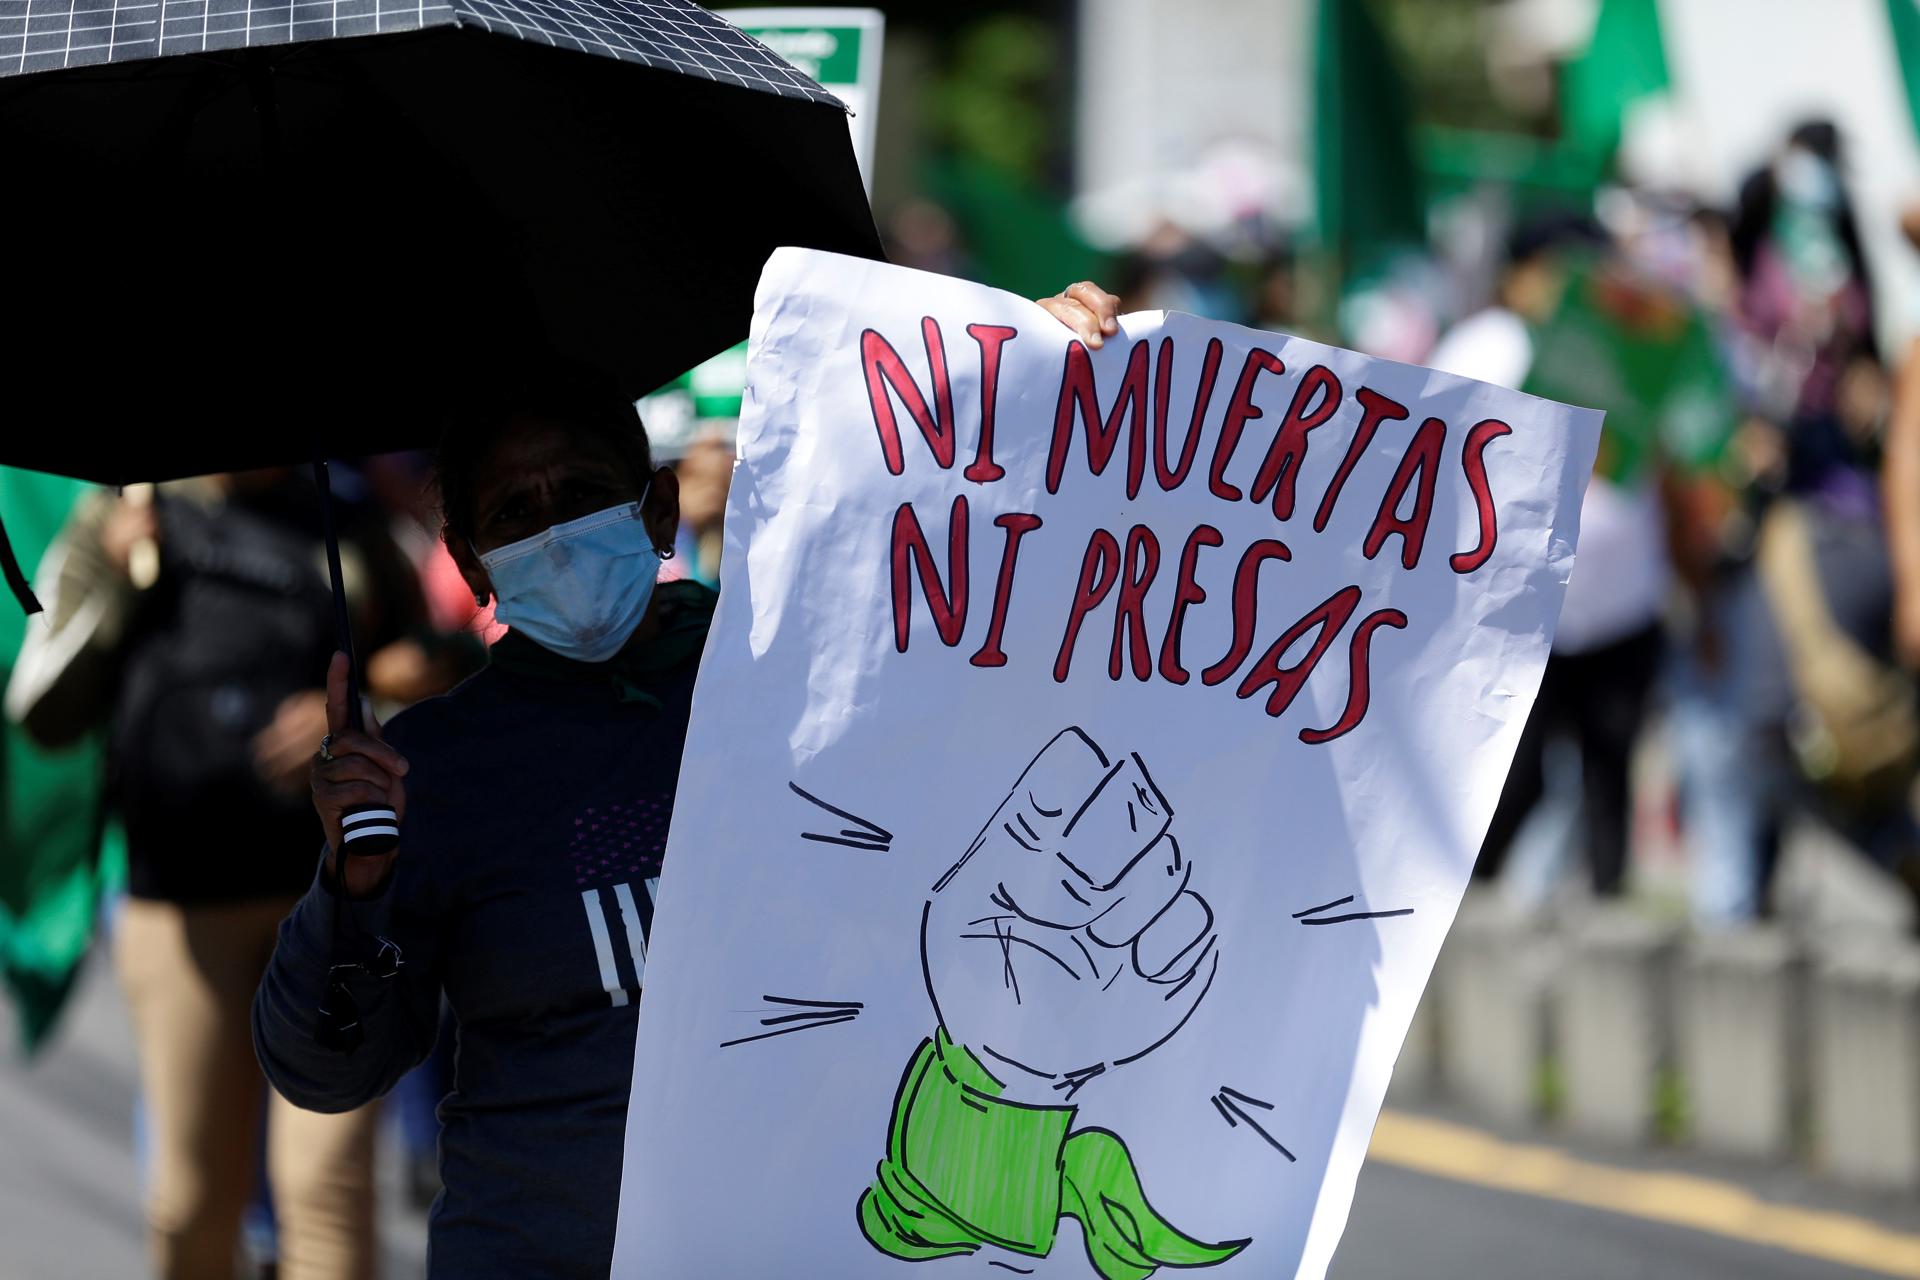 Mujeres salvadoreñas marchan por el derecho al aborto legal y seguro, en una fotografía de archivo. EFE/Rodrigo Sura